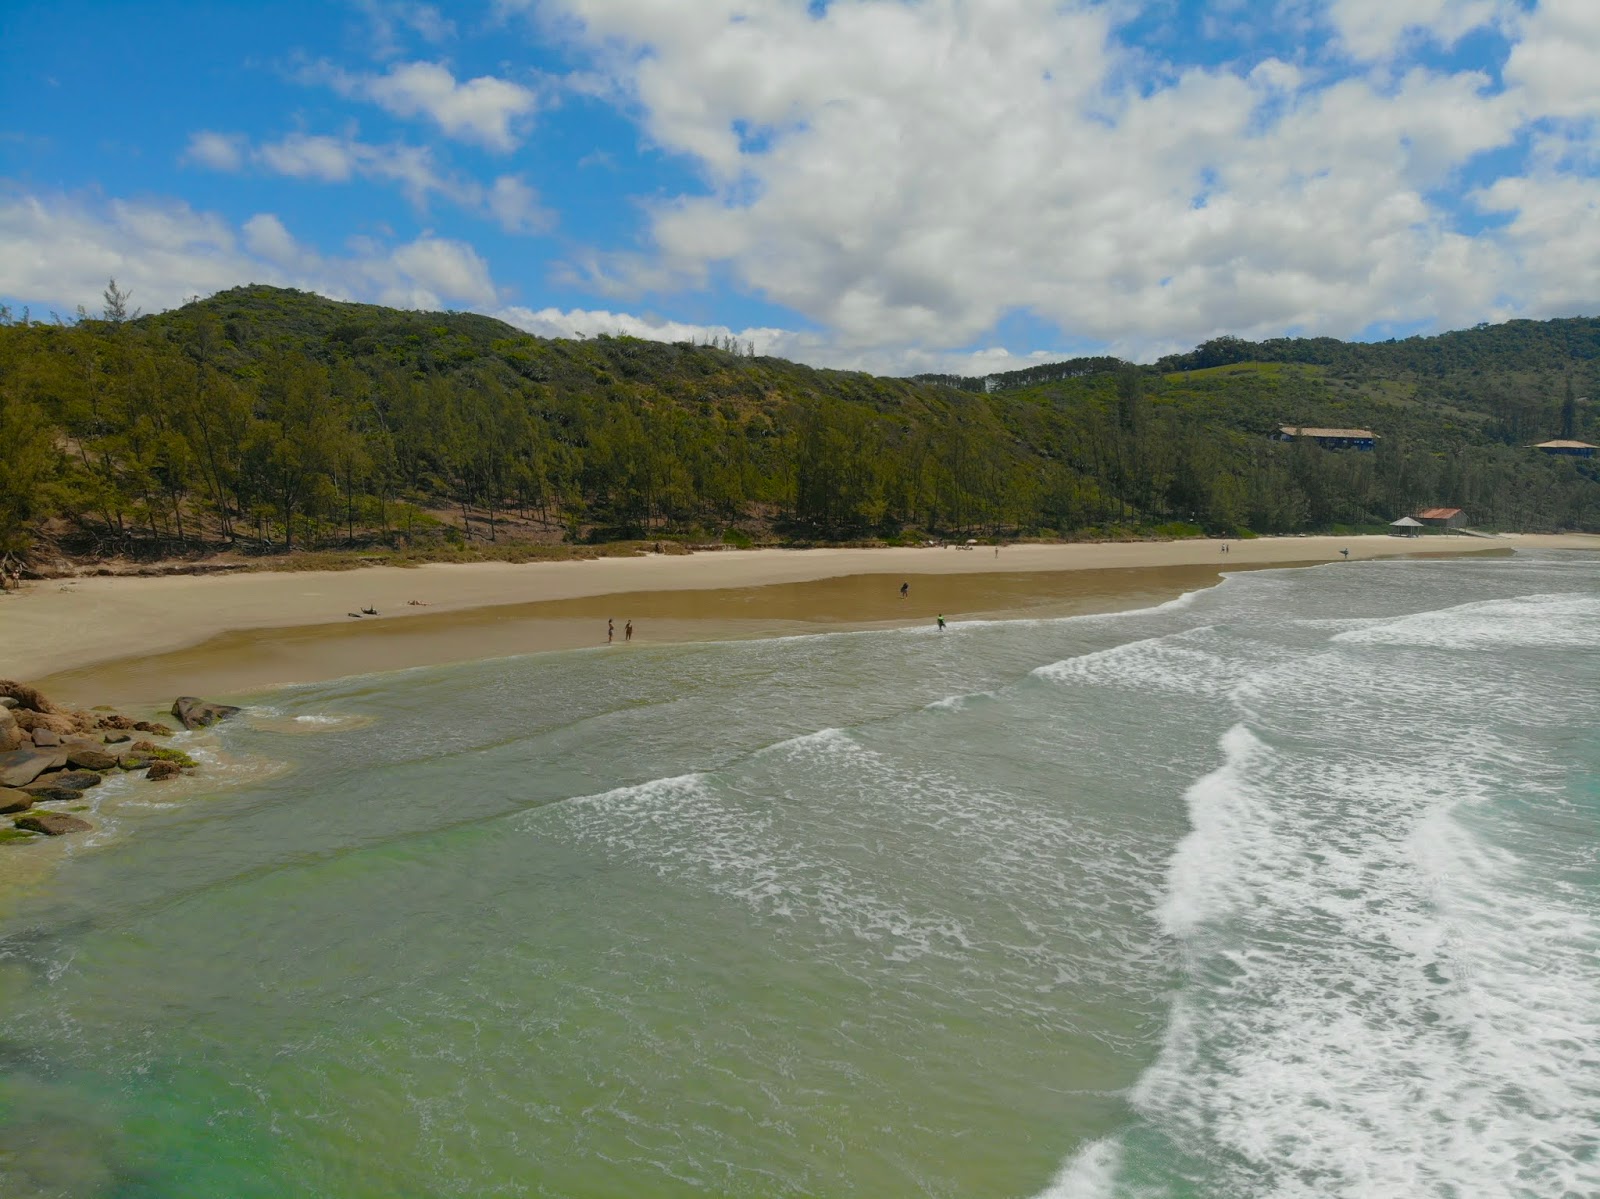 Zdjęcie Praia do Vermelha - popularne miejsce wśród znawców relaksu